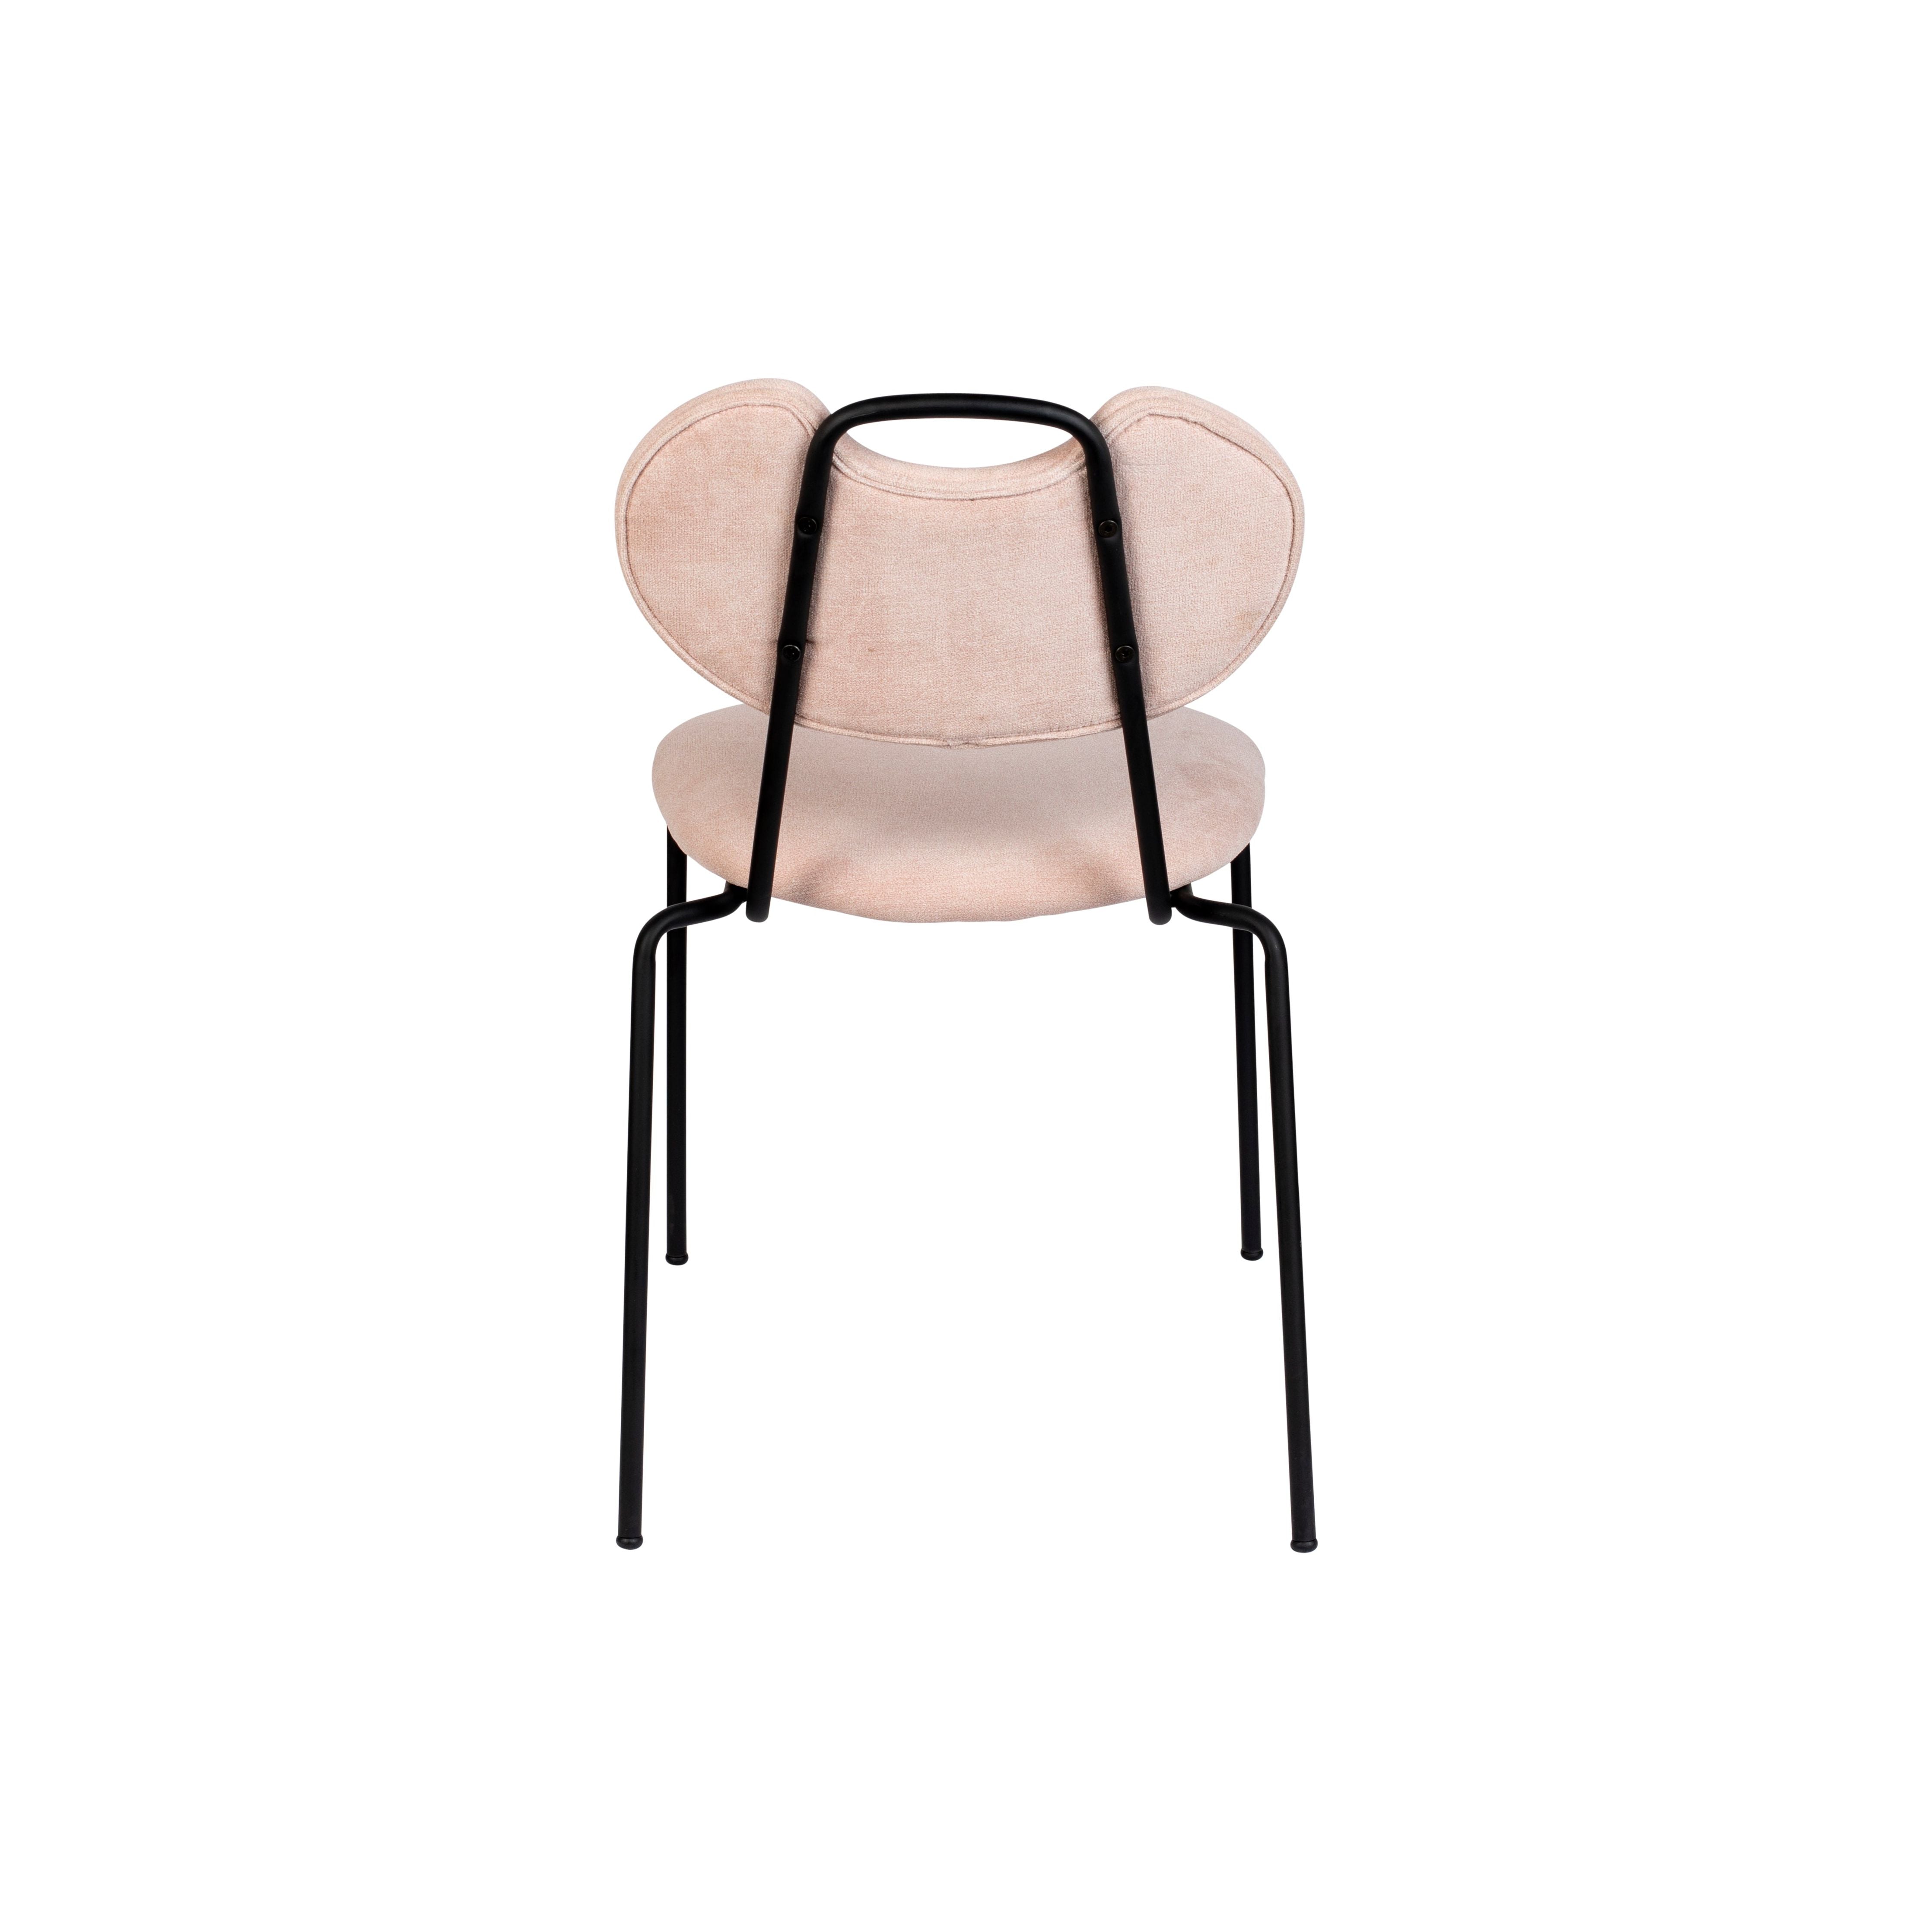 Chair aspen light pink | 2 pieces